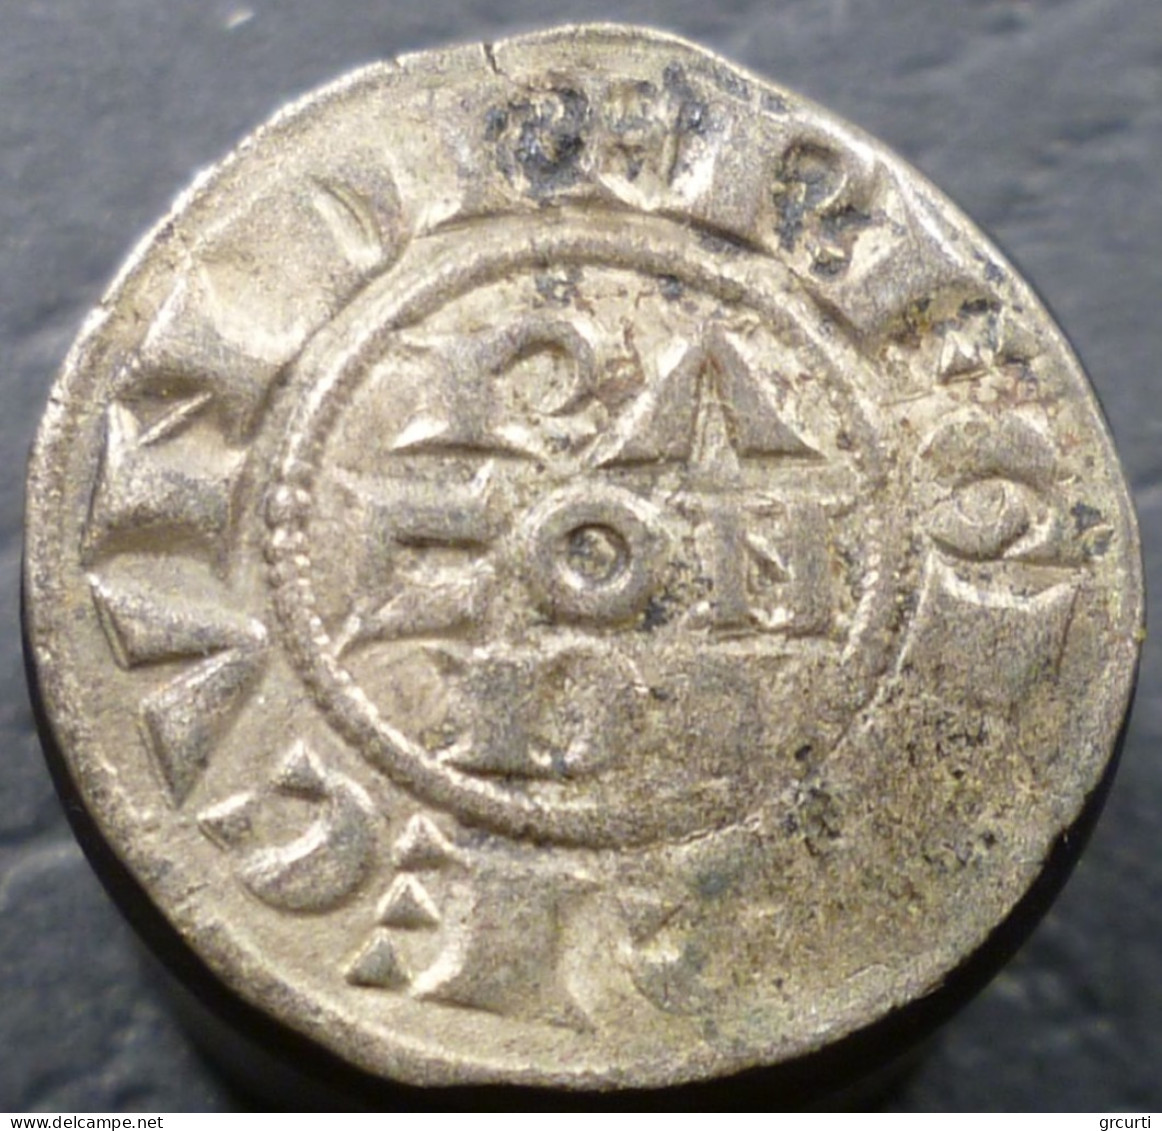 Italia - Piacenza - Mezzano - Monetazione Comunale (1140-1313) - Emilie